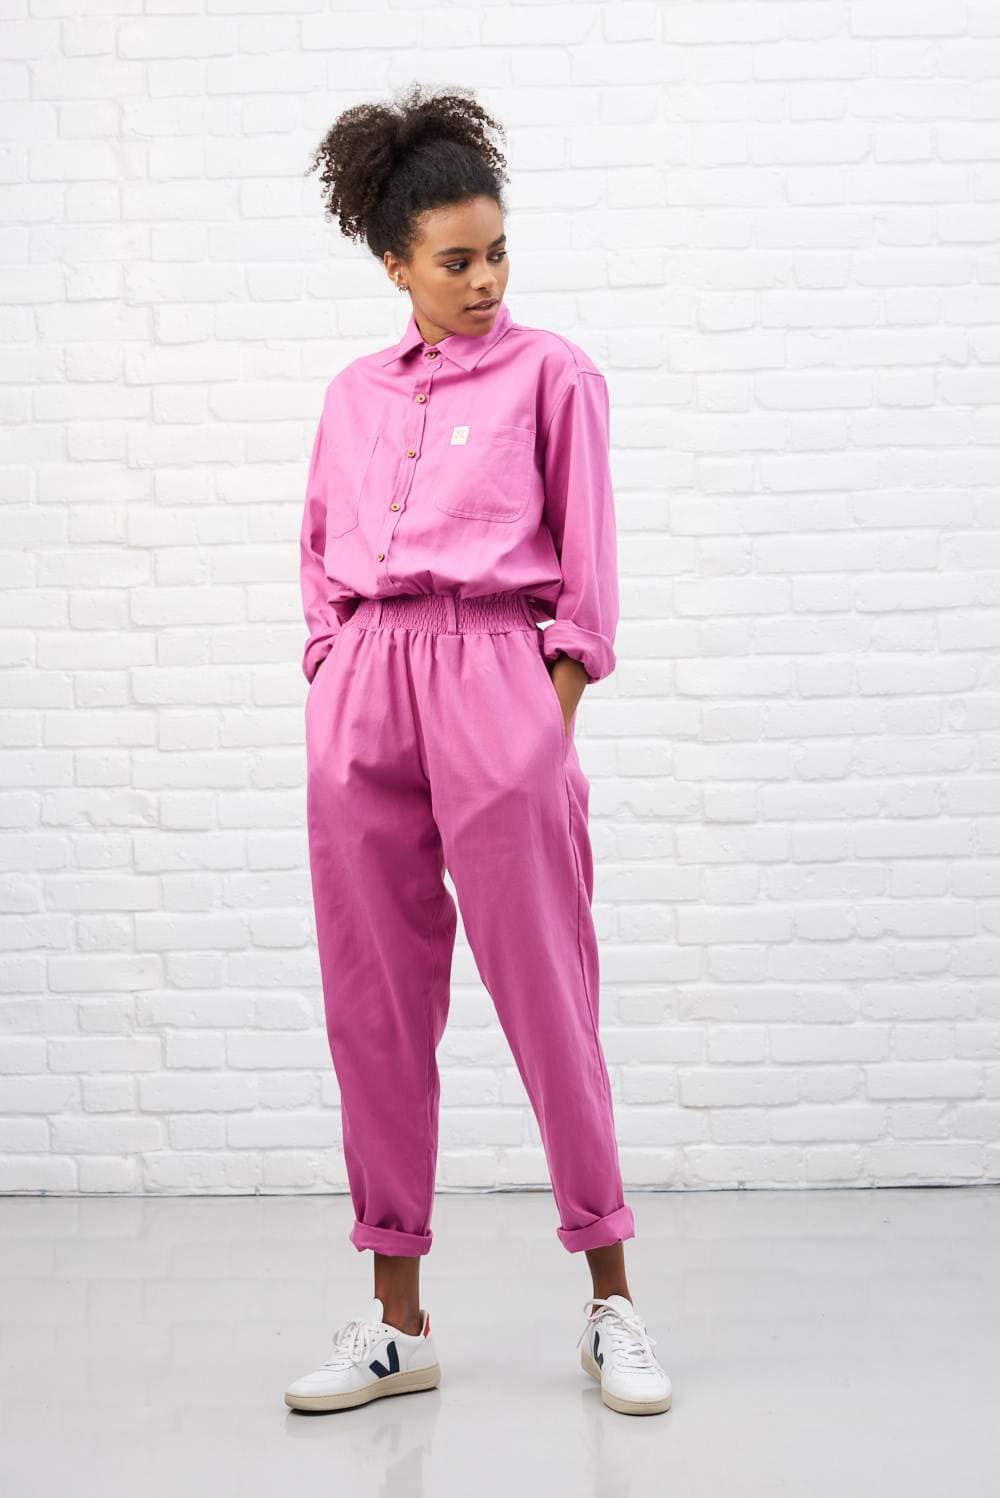 ladies pink boiler suit